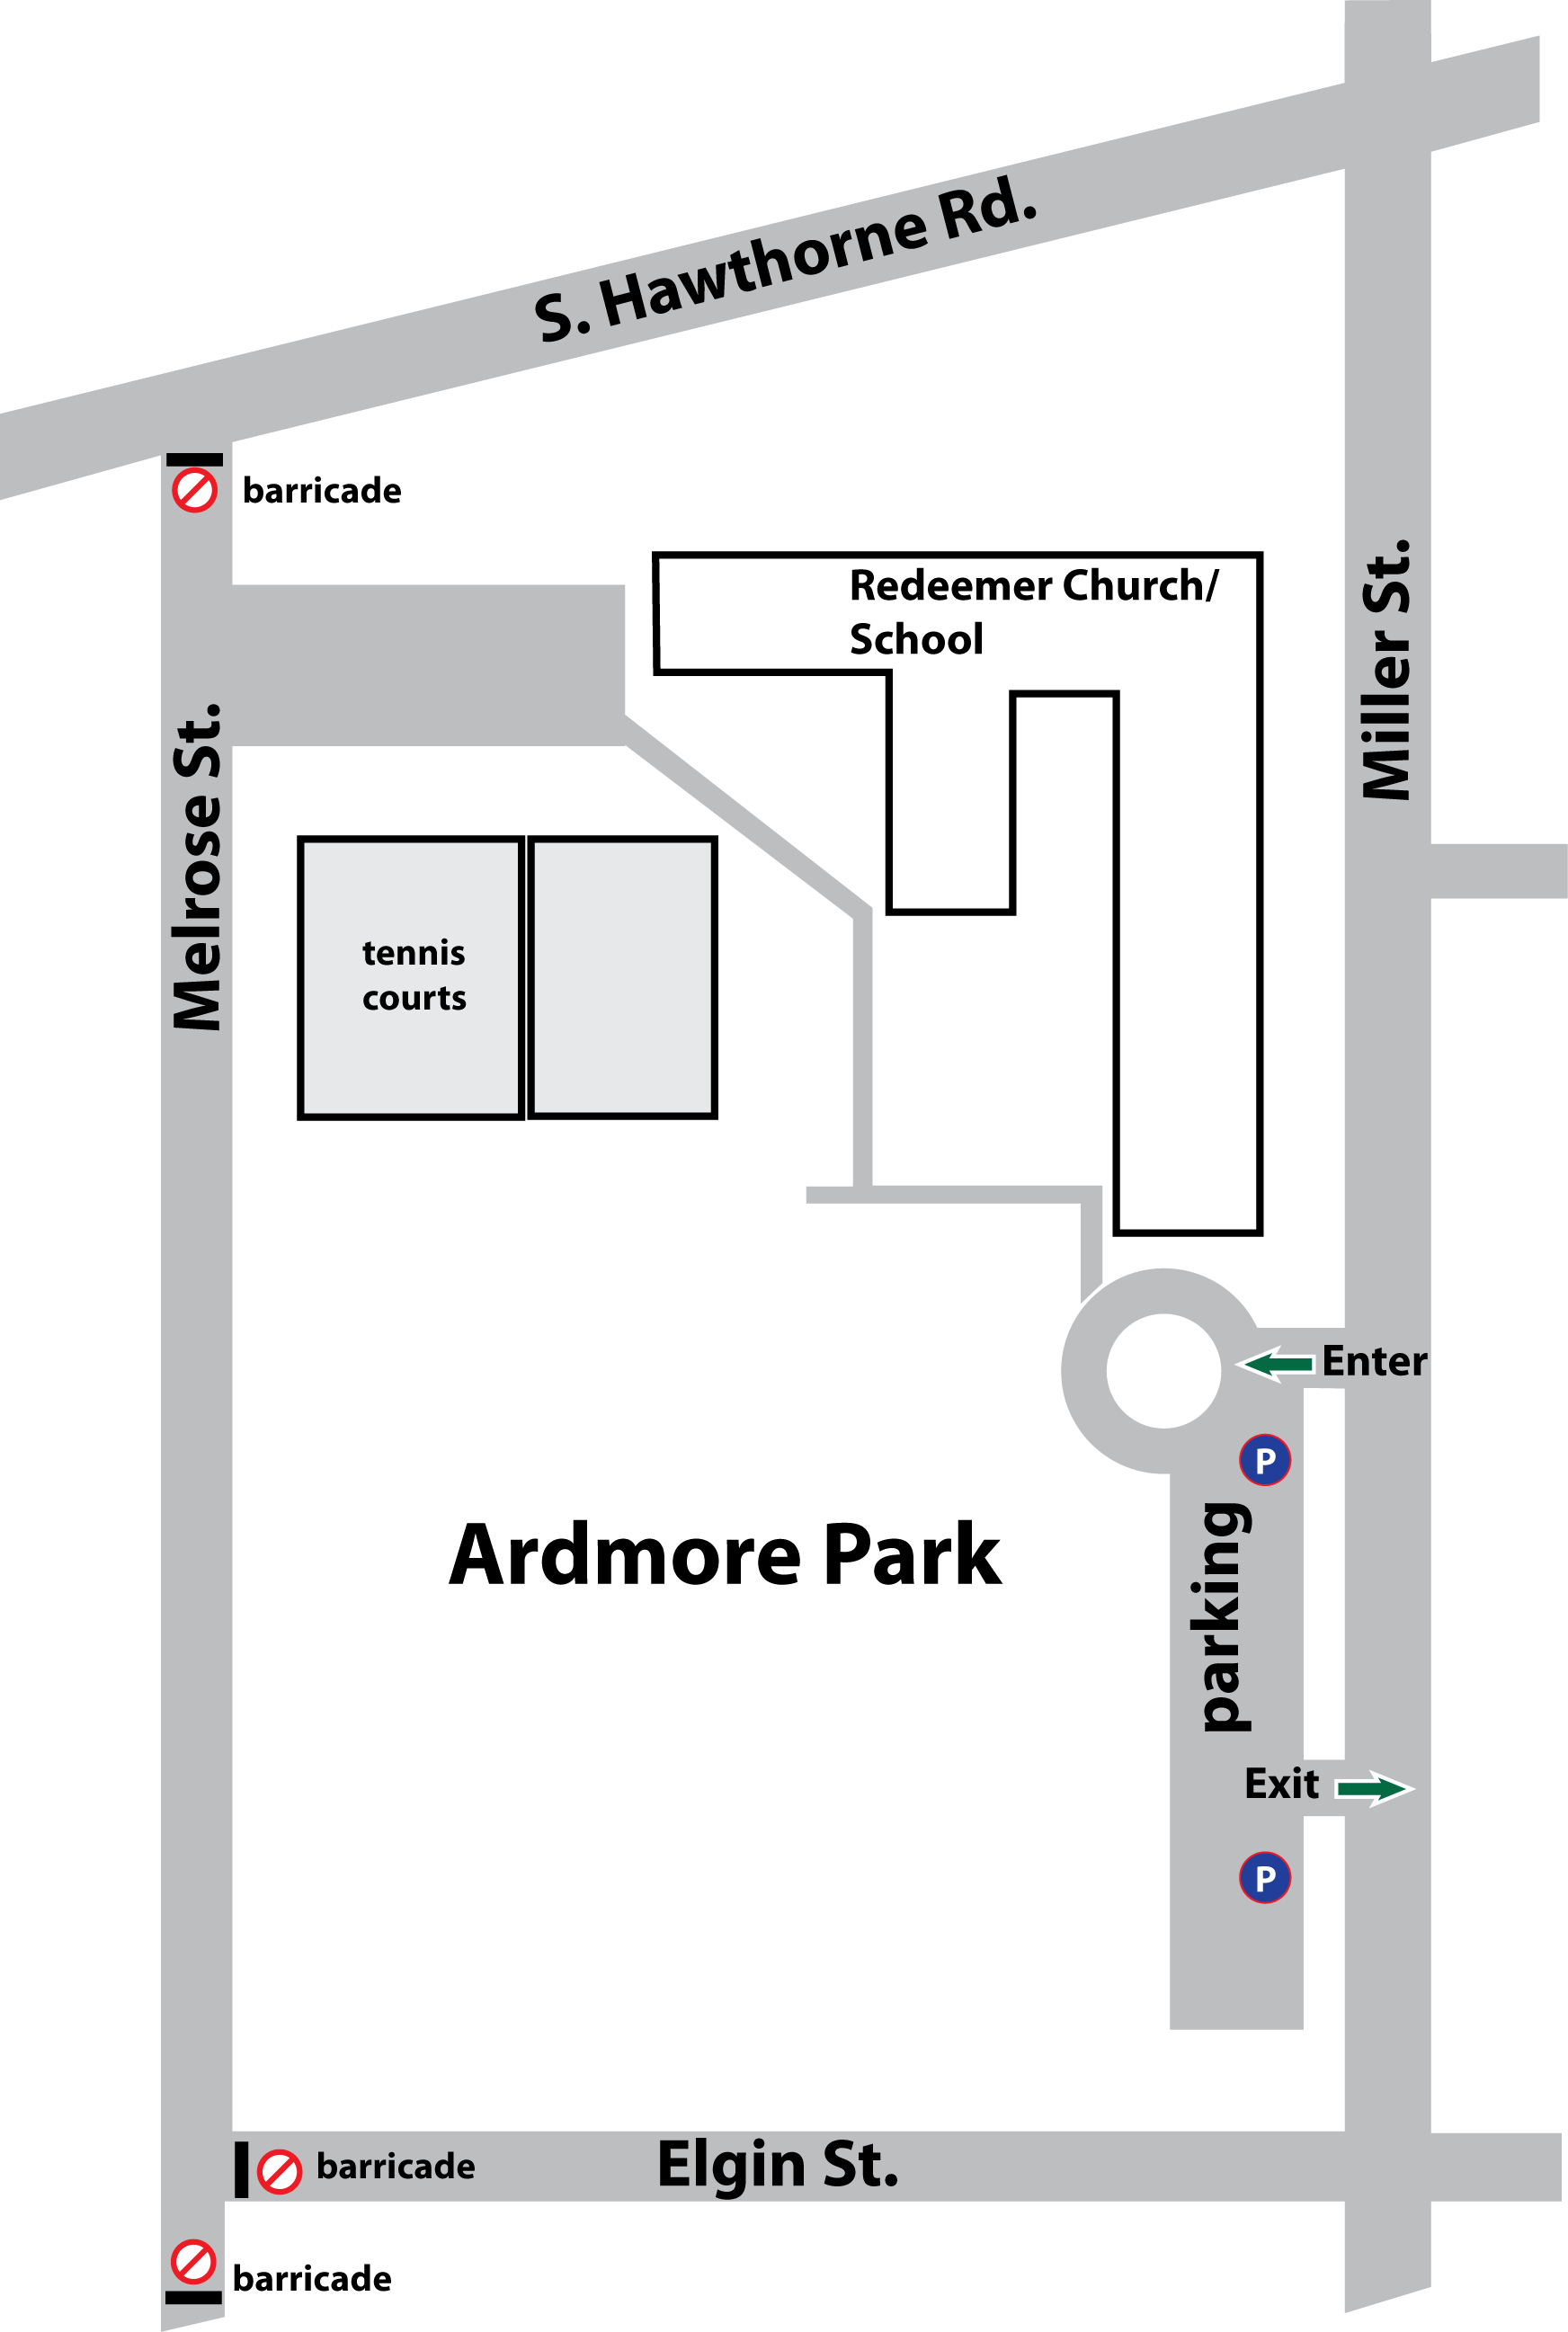 Map of Bikemore parking